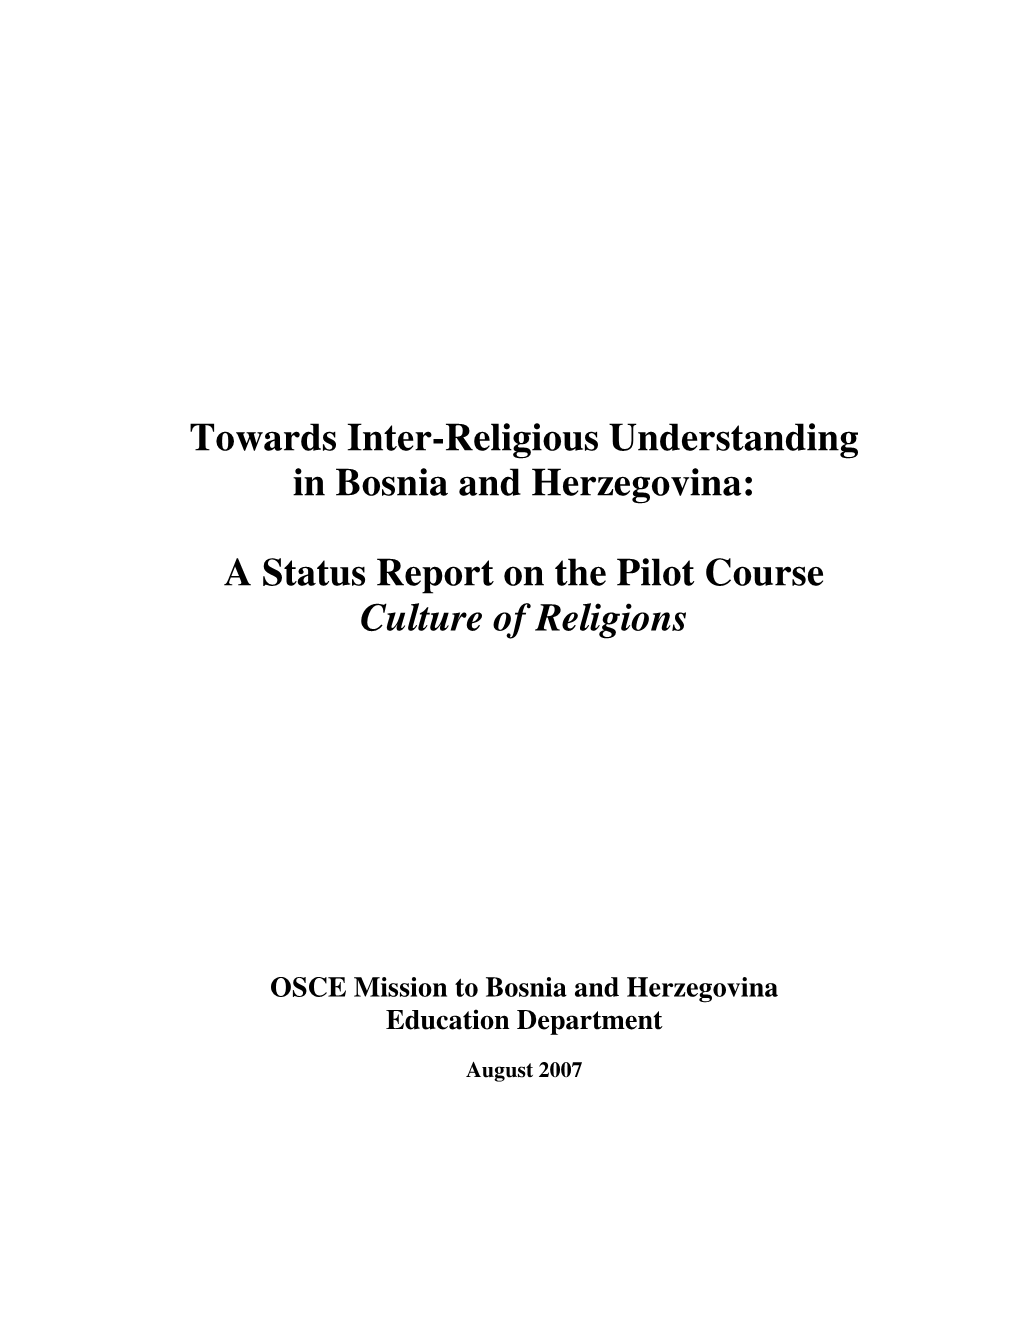 Towards Inter-Religious Understanding in Bosnia and Herzegovina